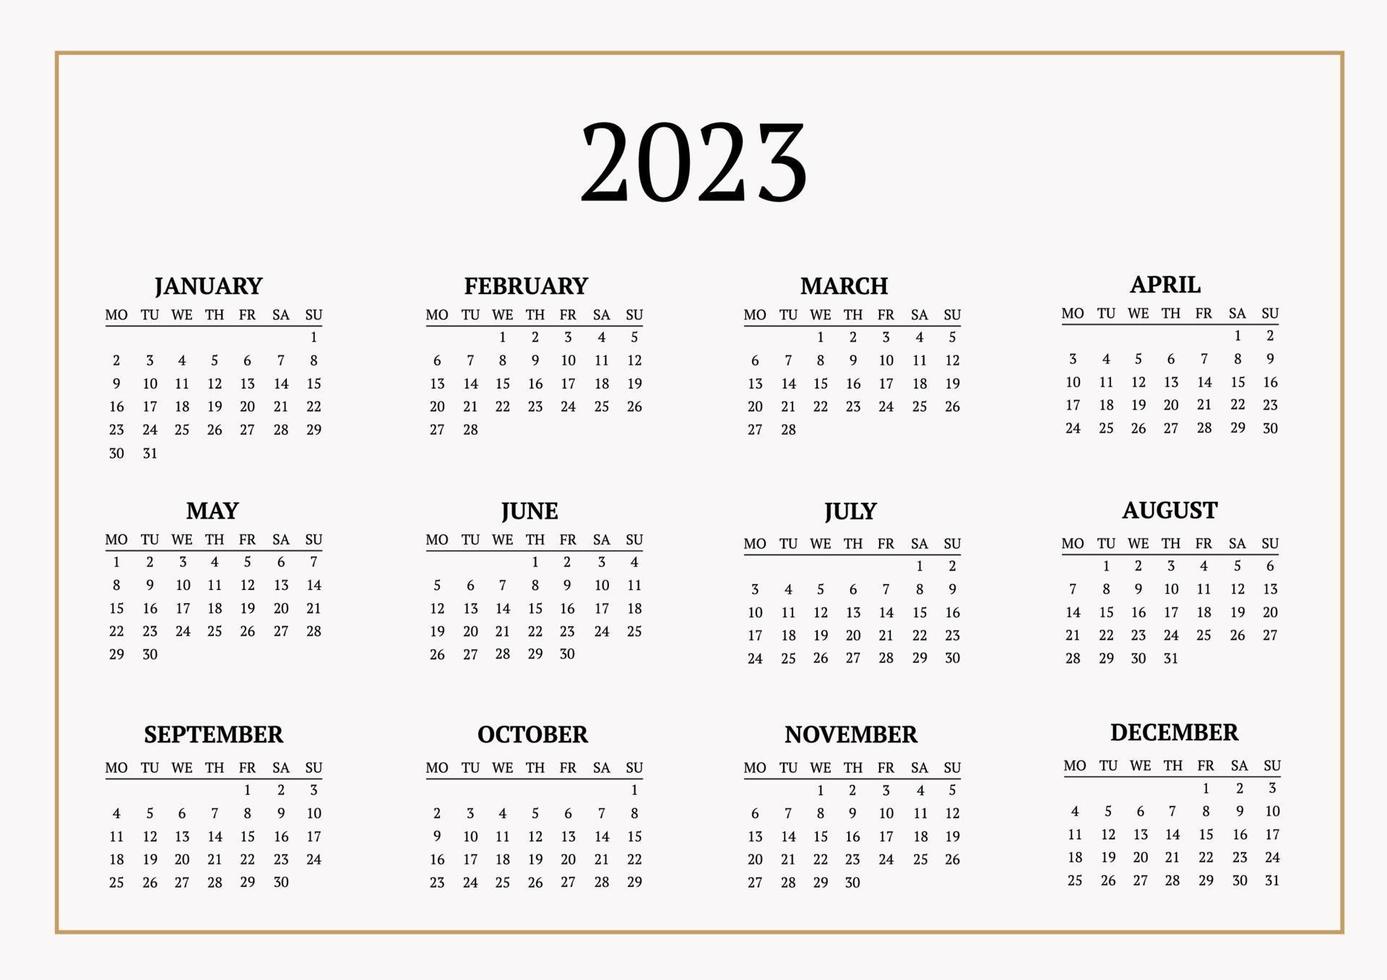 klassischer Monatskalender für 2023. ein Kalender im Stil des Minimalismus in quadratischer Form. Kalendervorlage vektor